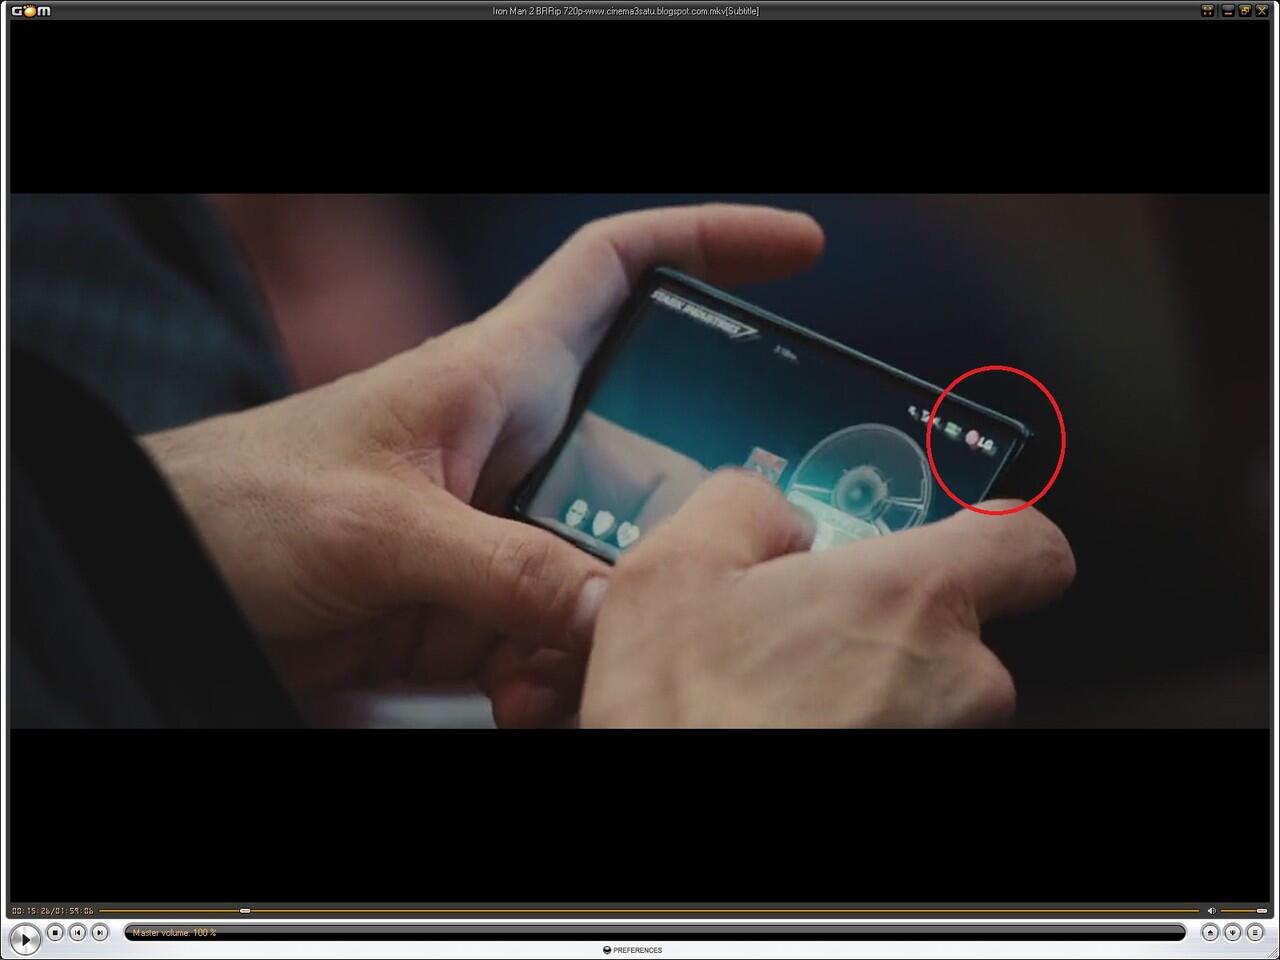 Ternyata Tony Stark menggunakan gadget merk LG gan..........